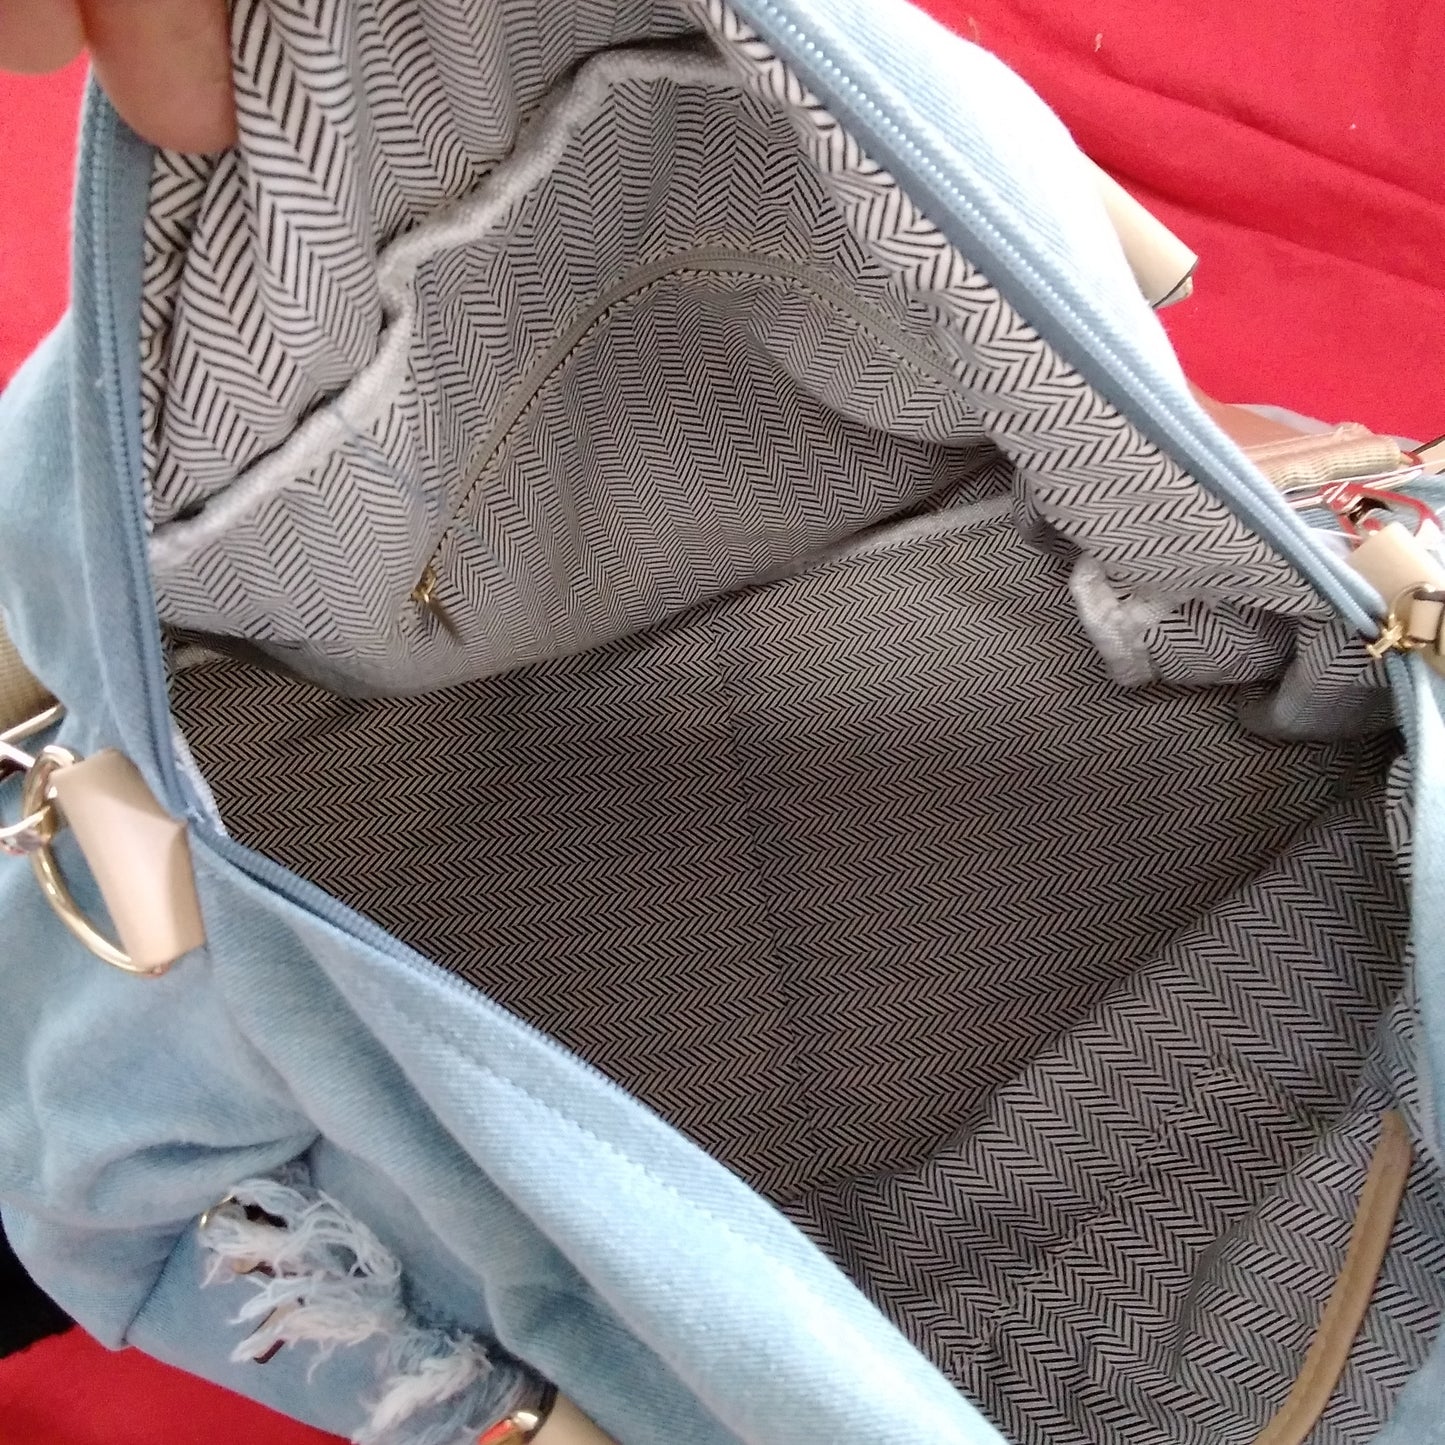 NWT - Violet Ray Denim Duffle/Travel Bag